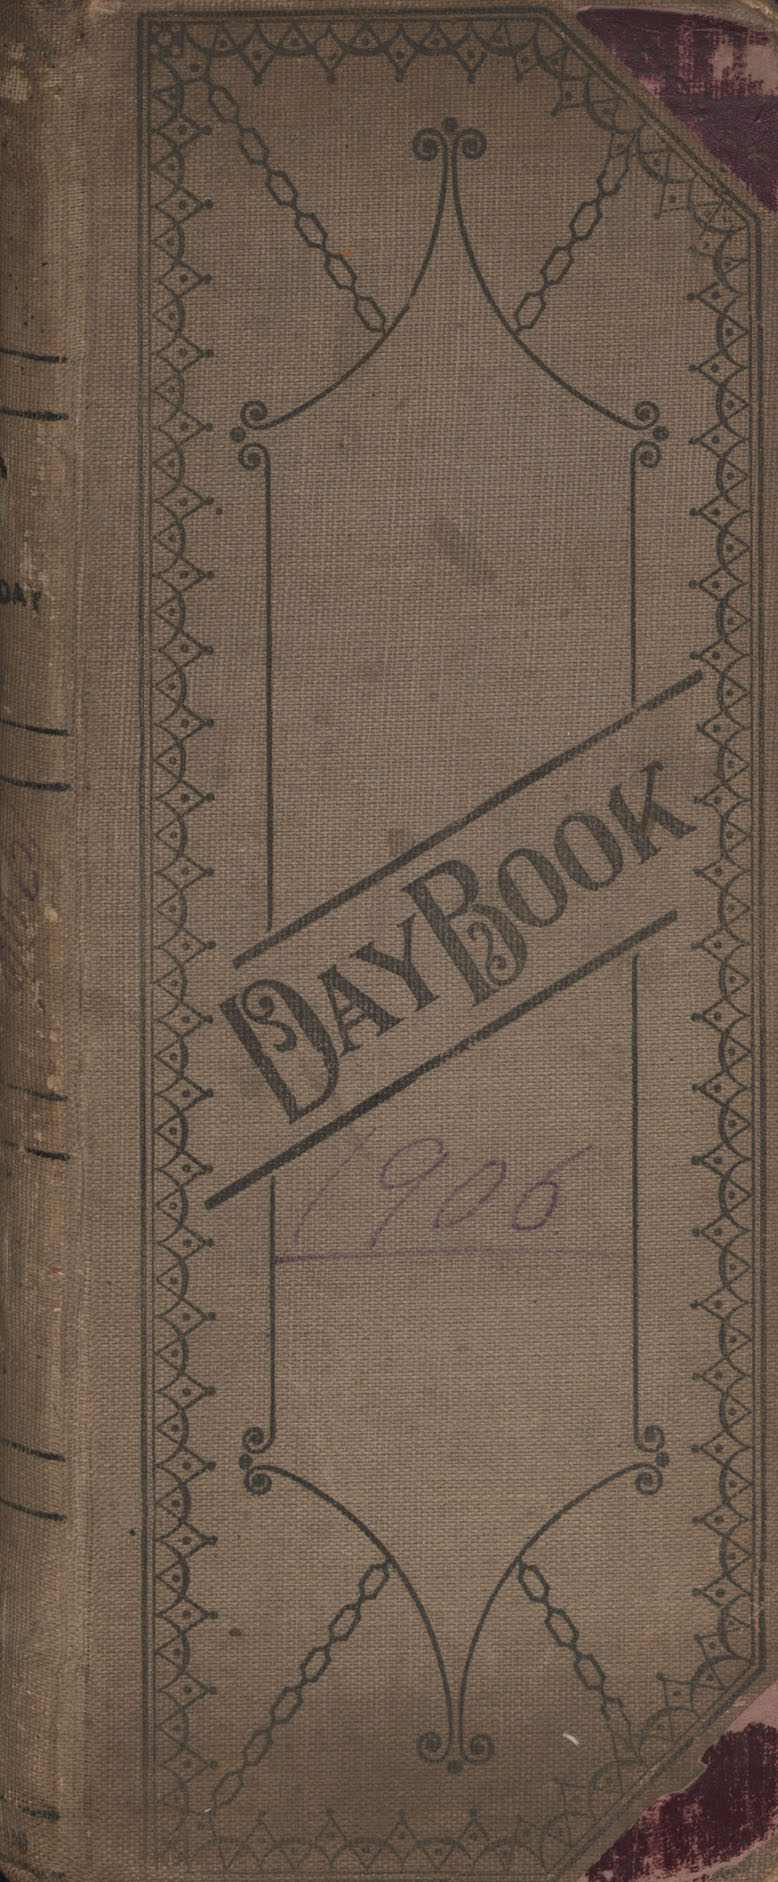 Daybook number 22 